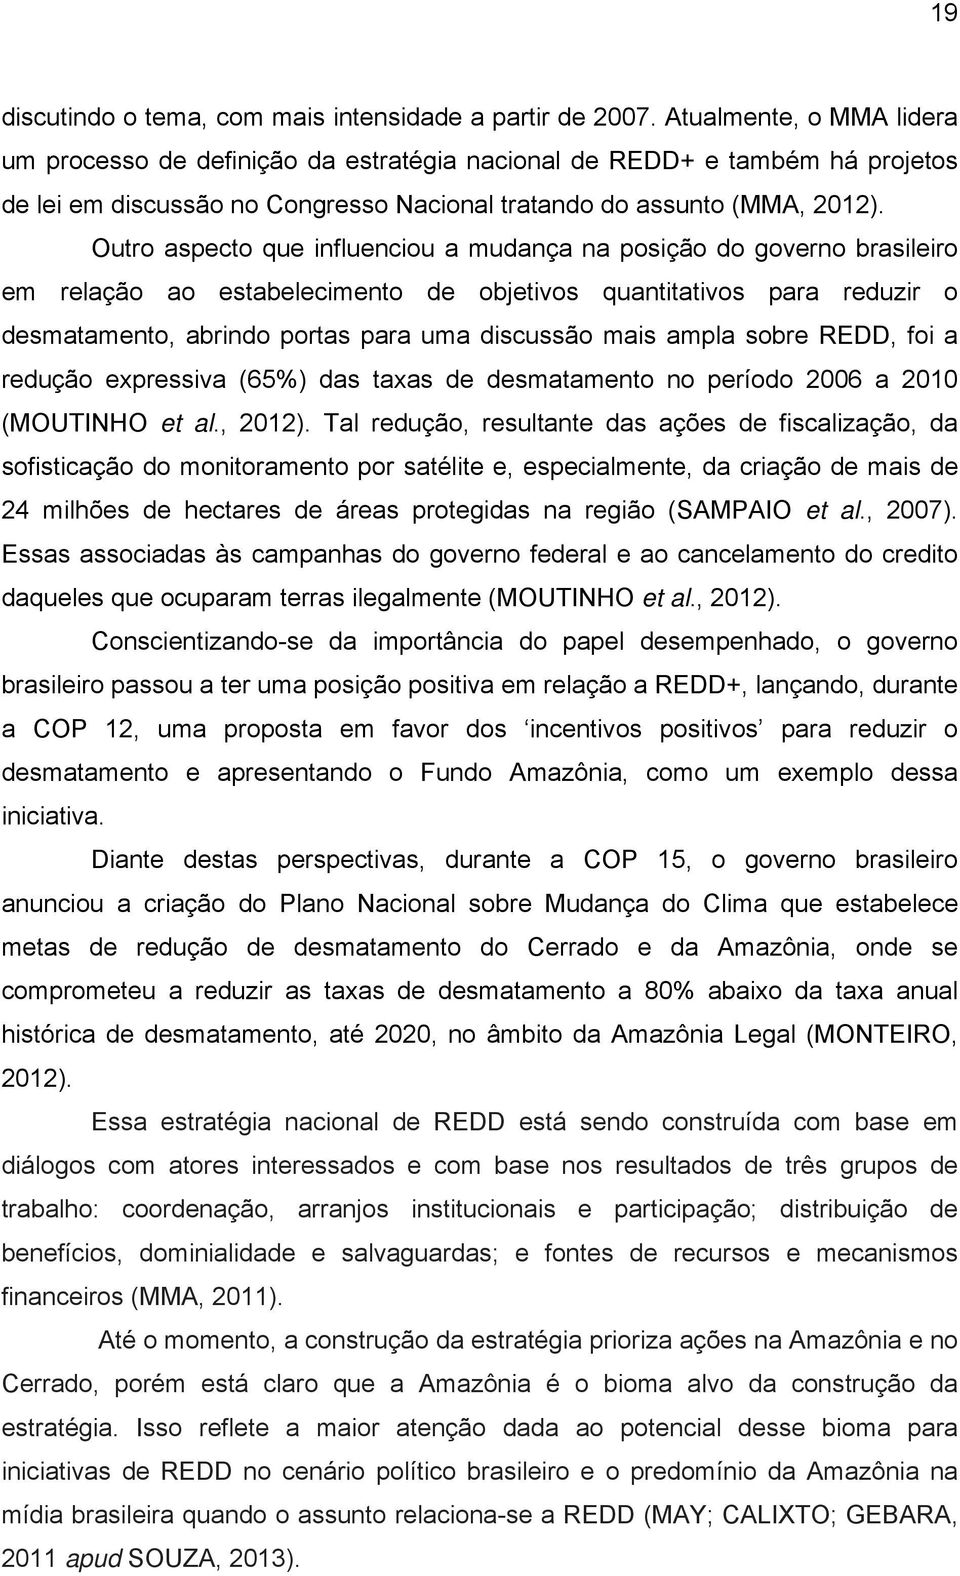 Outro aspecto que influenciou a mudança na posição do governo brasileiro em relação ao estabelecimento de objetivos quantitativos para reduzir o desmatamento, abrindo portas para uma discussão mais